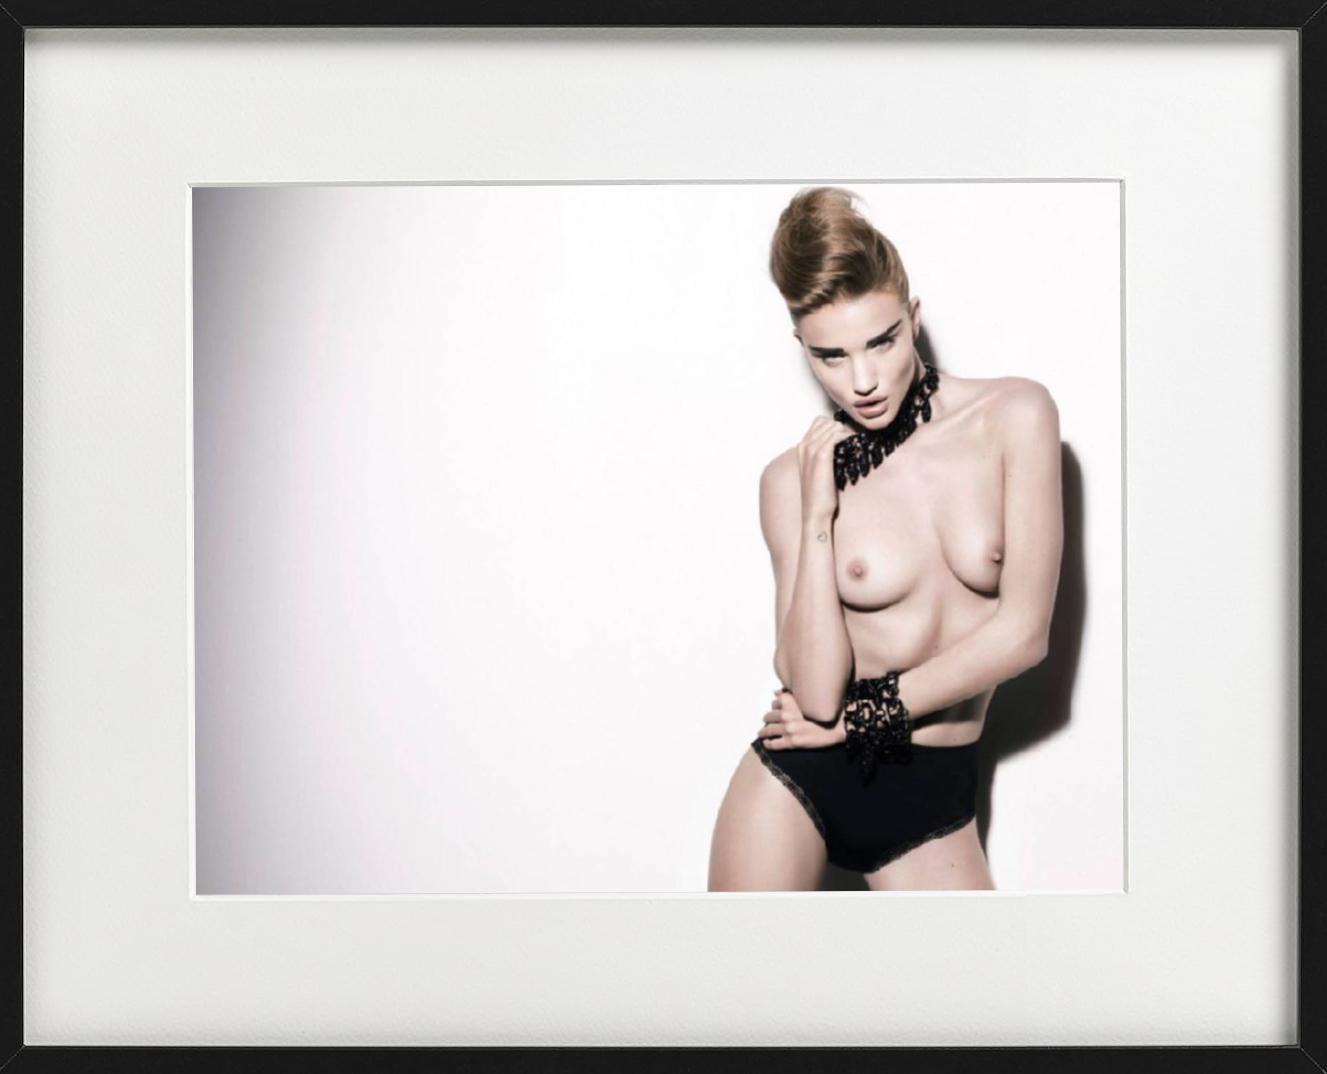 Rosie Huntington-Whitley - nue dans des bijoux noirs, photographie d'art, 2010 - Gris Nude Photograph par Rankin